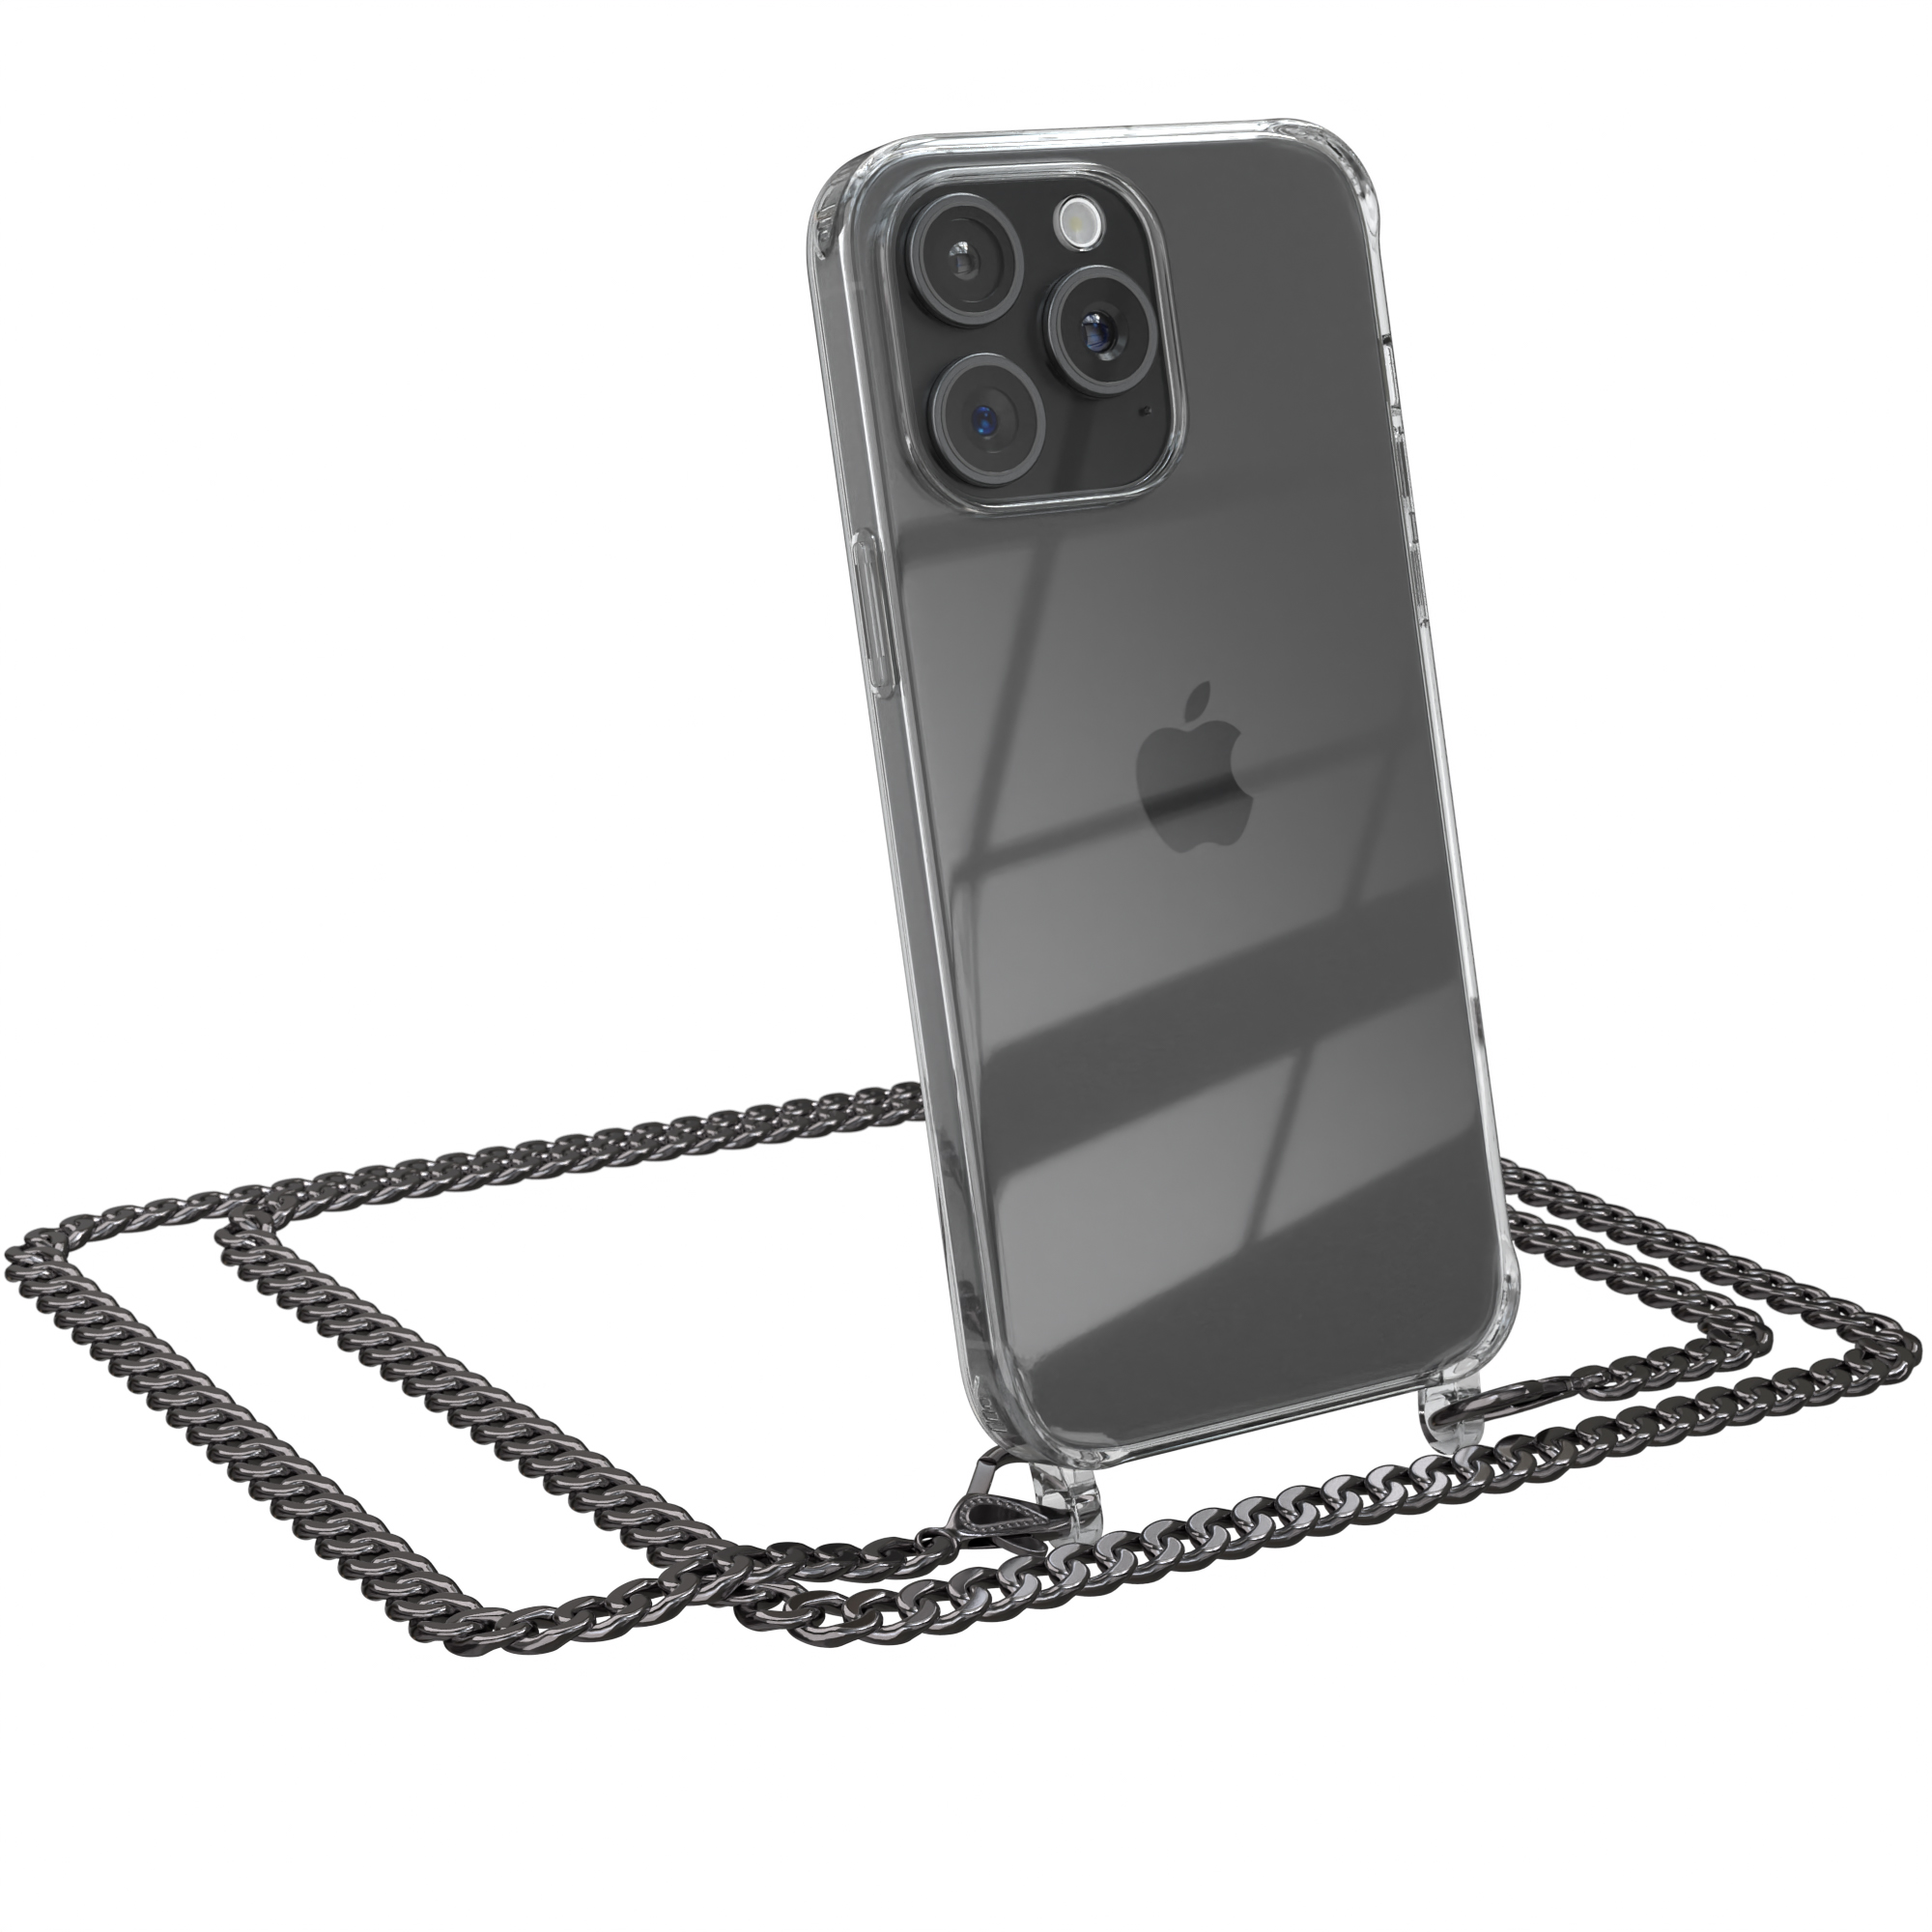 Umhängetasche, CASE Metall Anthrazit Grau EAZY Schwarz, + Max, extra Apple, 15 Pro iPhone Handykette Kordel